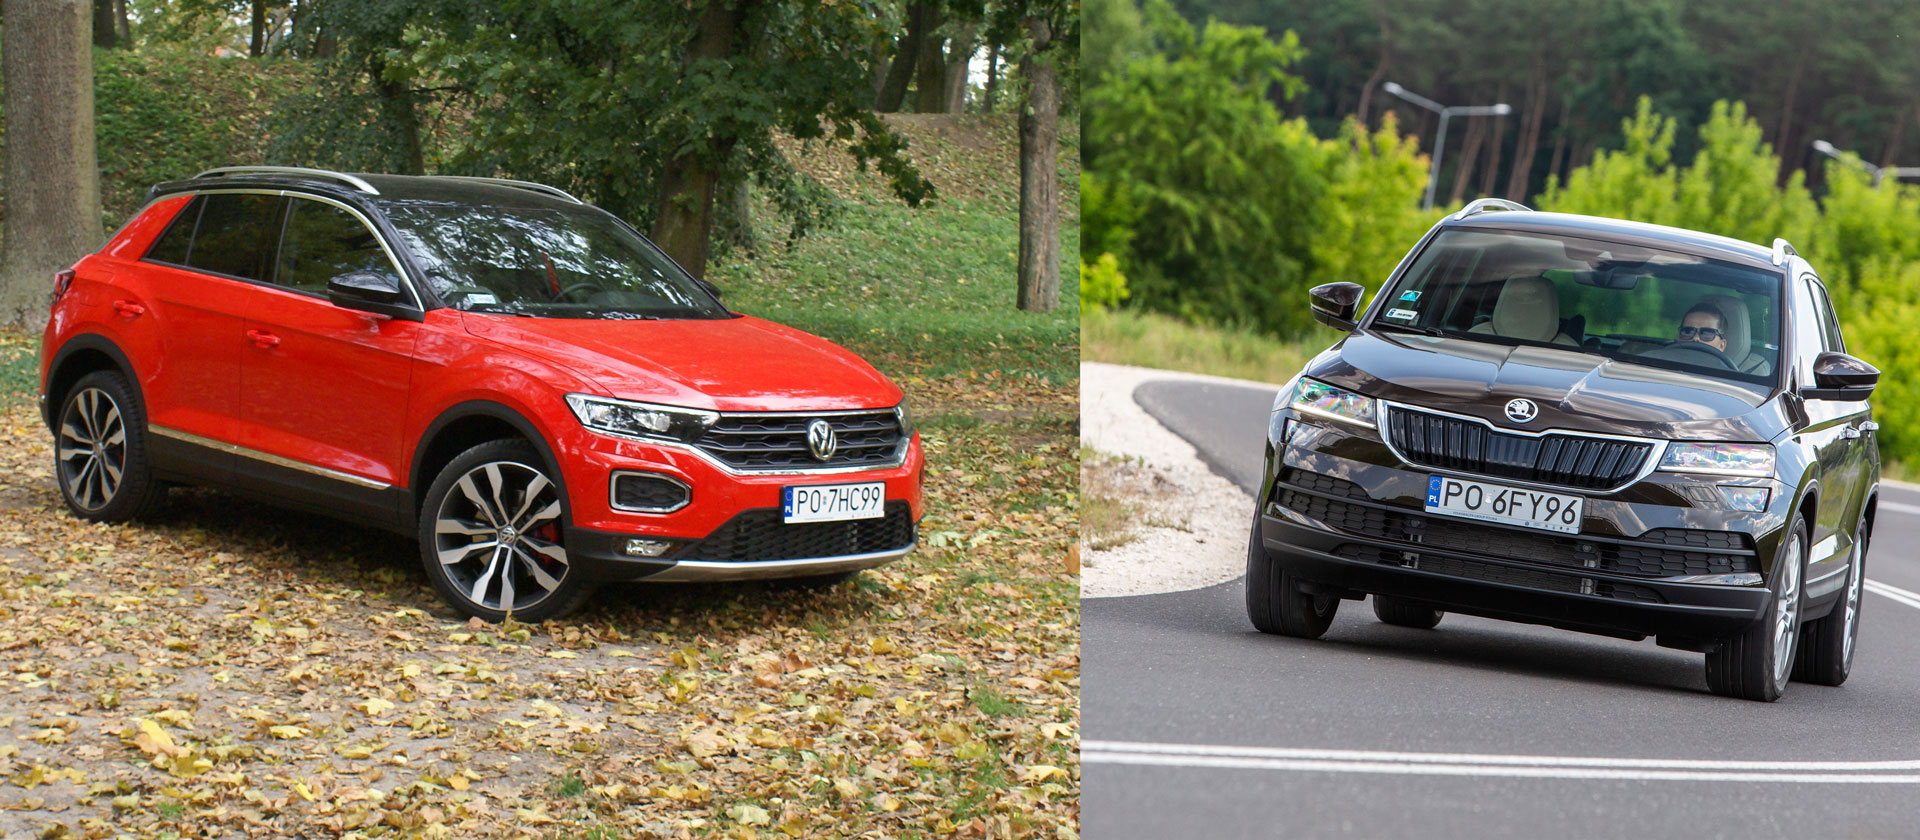 TEST: Škoda Karoq vs Volkswagen T-Roc – czy popularność idzie w parze z technologią?